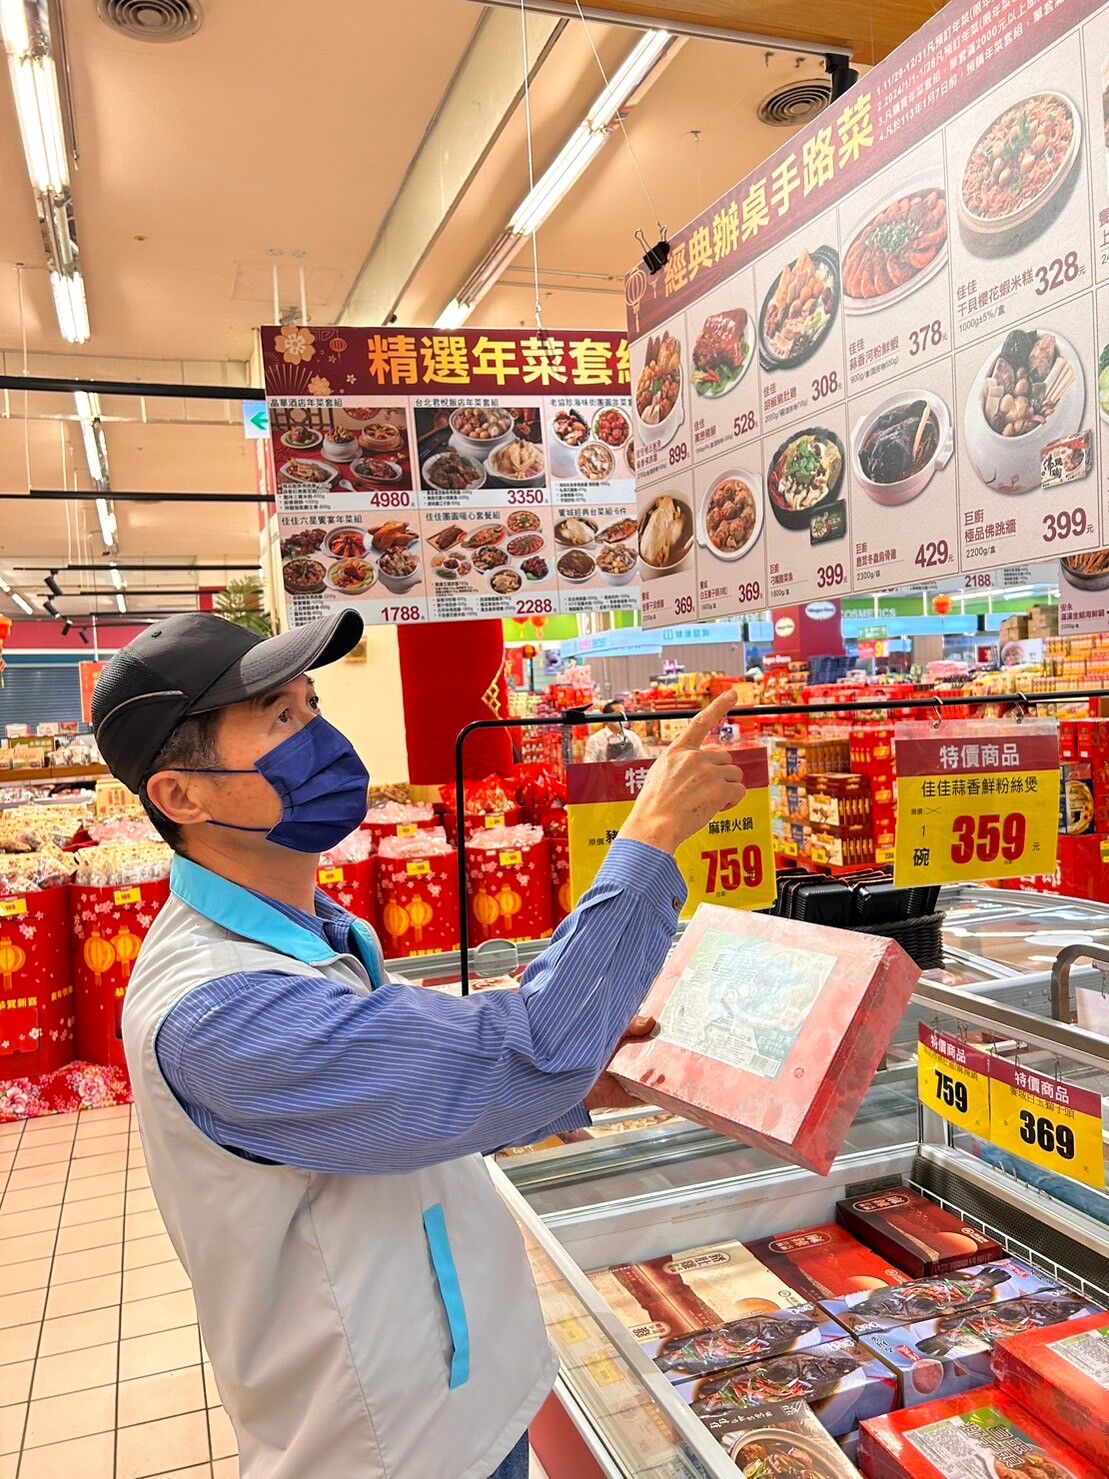 竹市府消保官提醒選購冷凍年菜應注意商品標示，食得安心又健康。